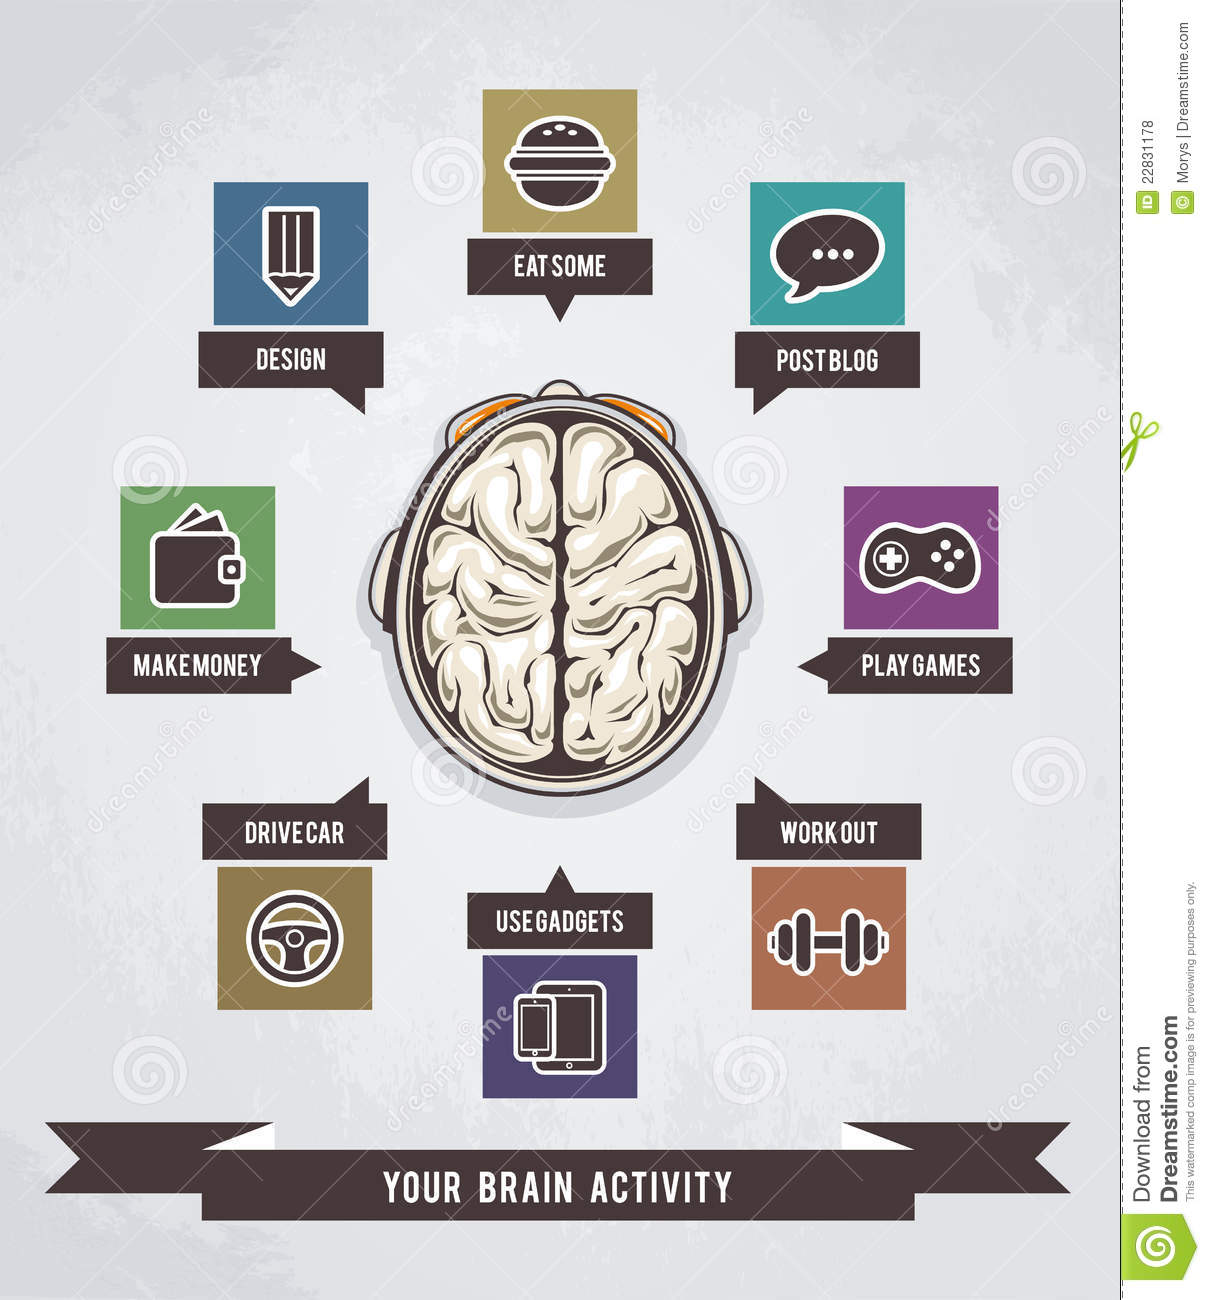 Brain Activities